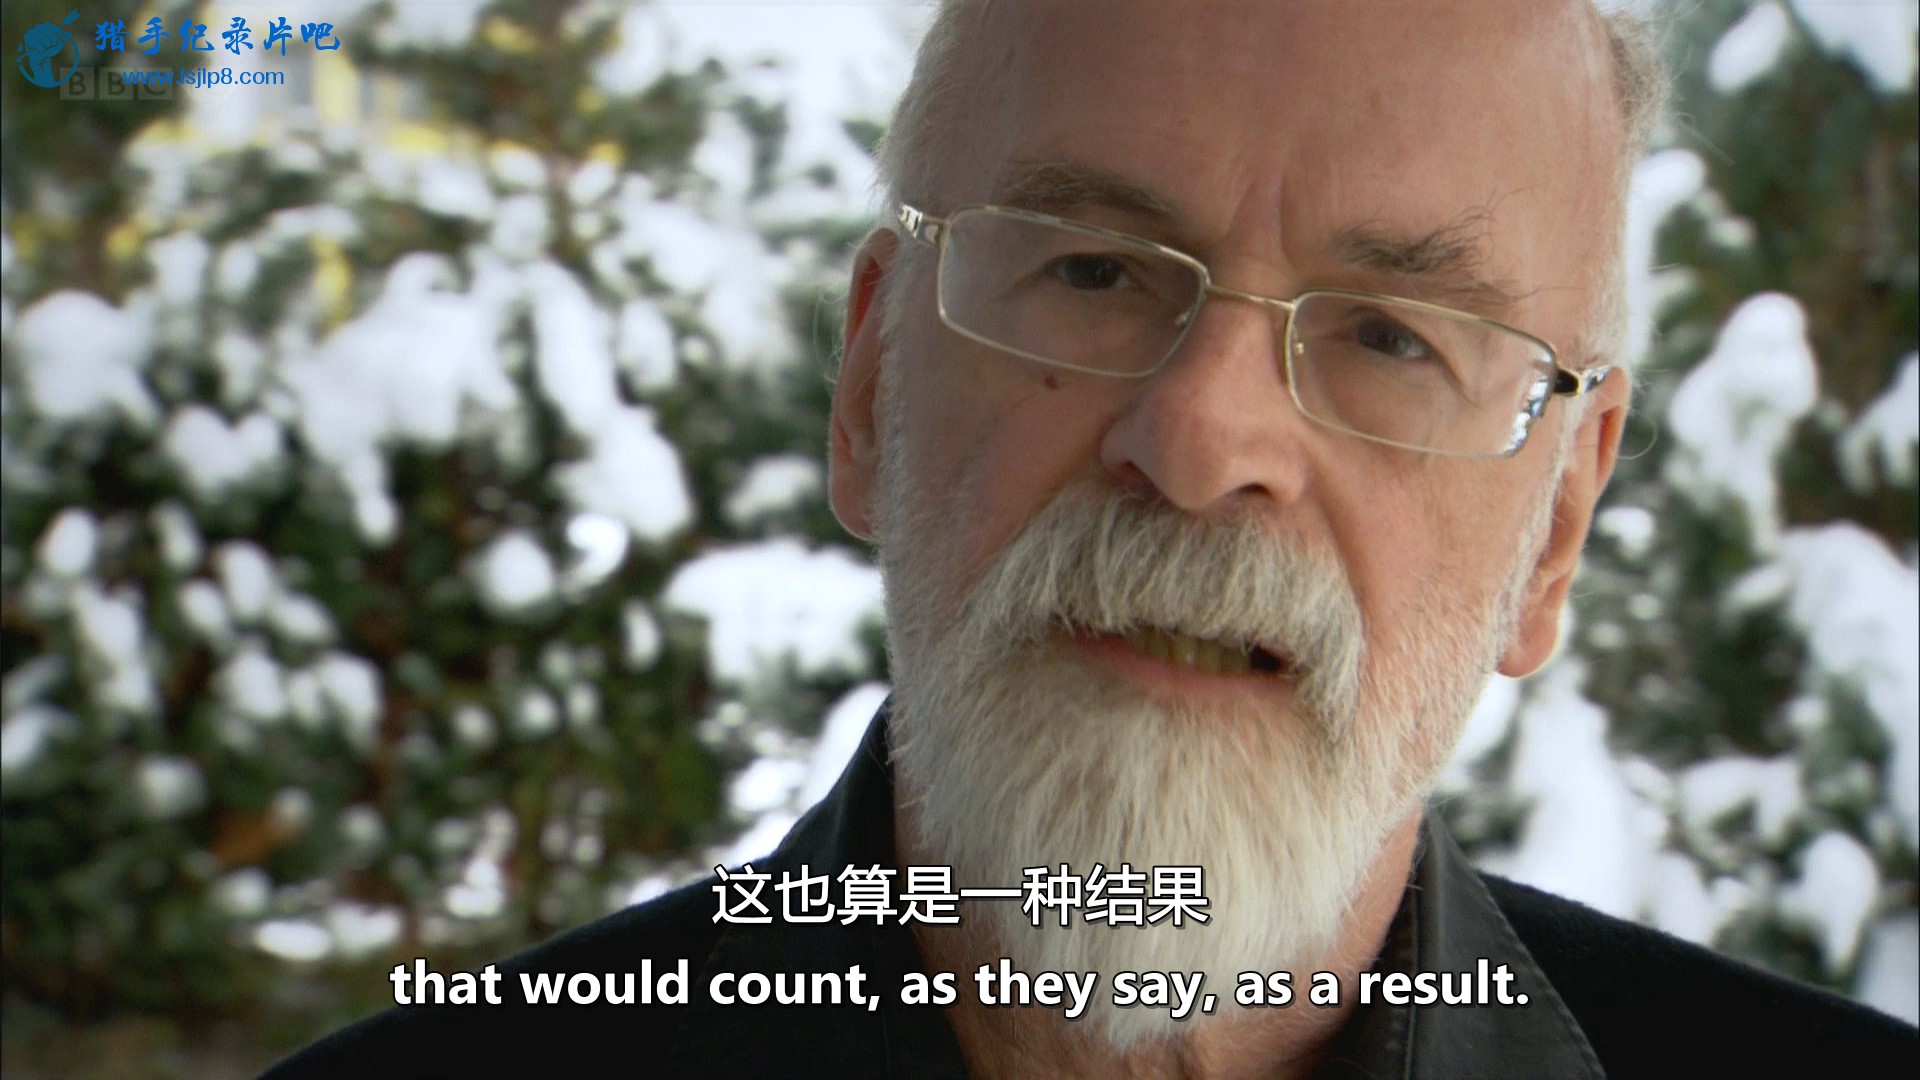 BBC.Terry.Pratchett.Choosing.to.Die.1080i.HDTV.MVGroup.mkv_20190930_091303.125.jpg